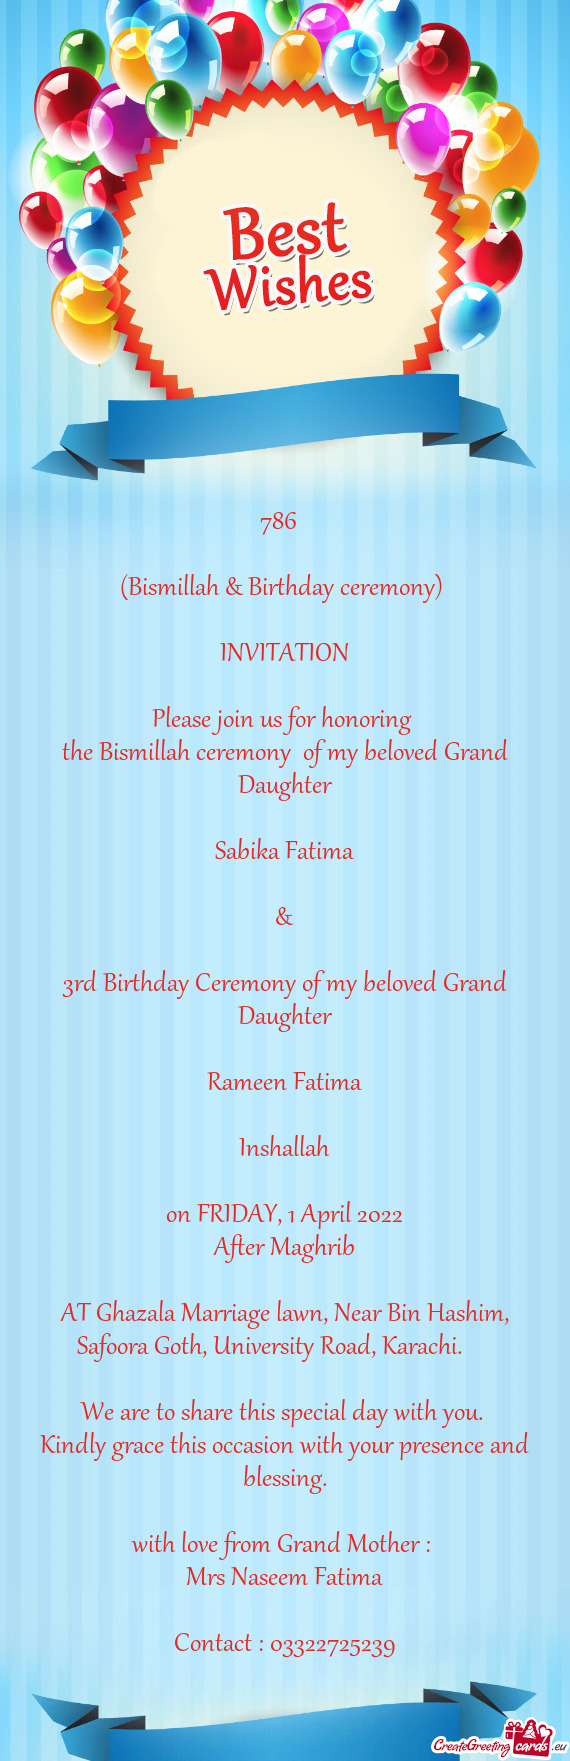 3rd Birthday Ceremony of my beloved Grand Daughter